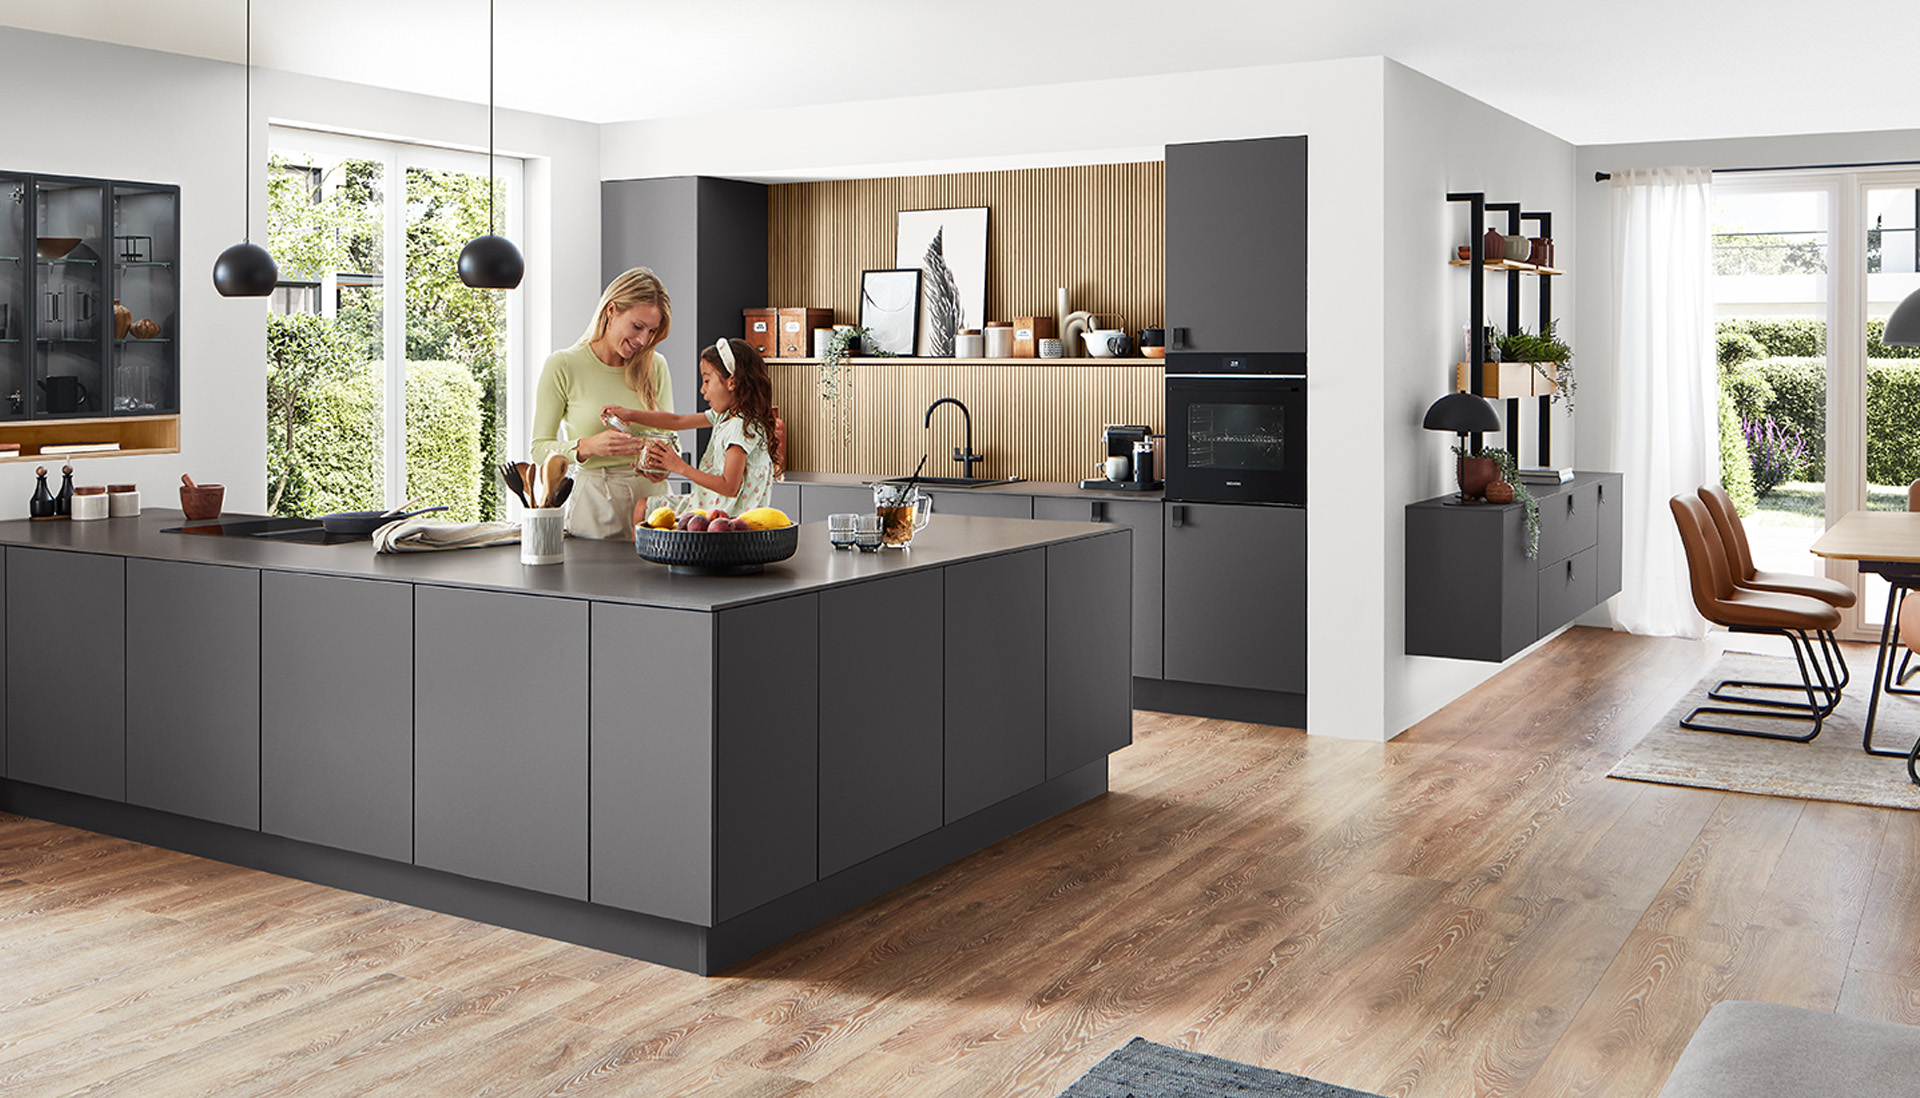 Cocina moderna y espaciosa con un diseño elegante, que cuenta con una isla central, electrodomésticos integrados y una familia disfrutando de una actividad de cocina juntos.